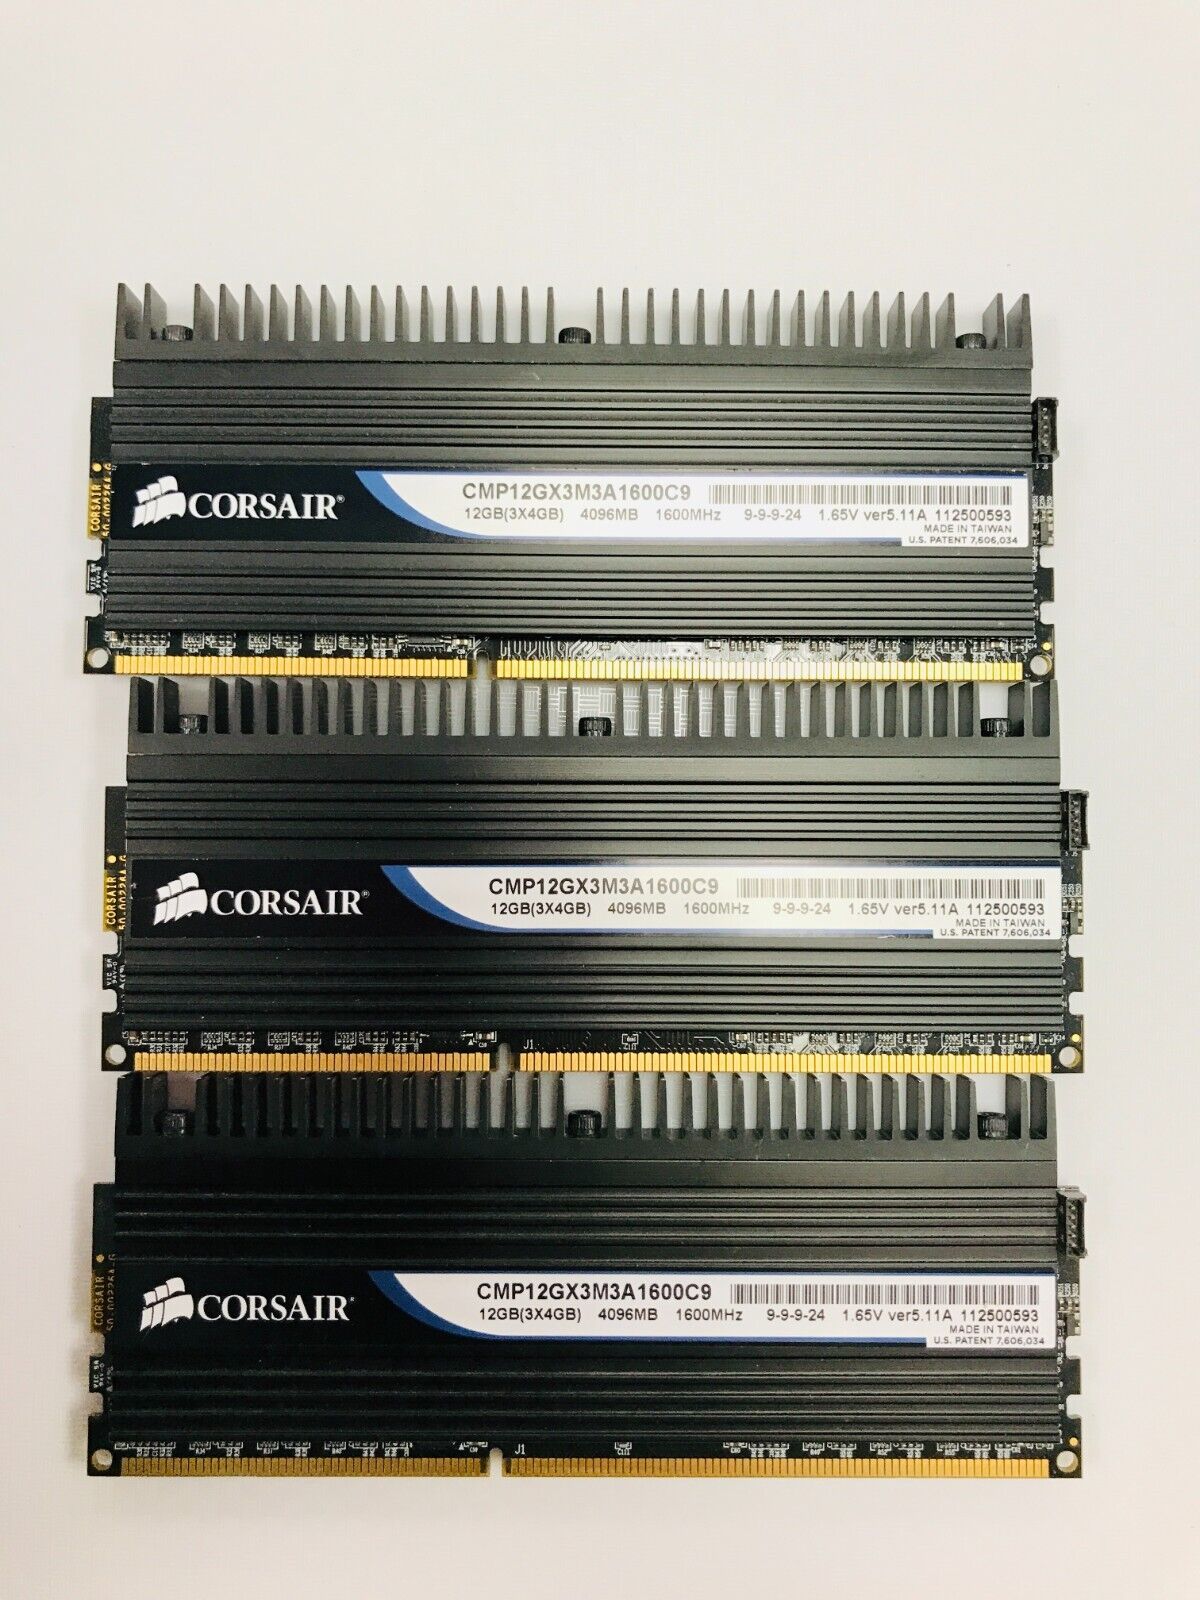 Corsair Dominator 12GB (4GBx3) DDR3 1600MHz RAM (CMP12GX3M3A1600C9)